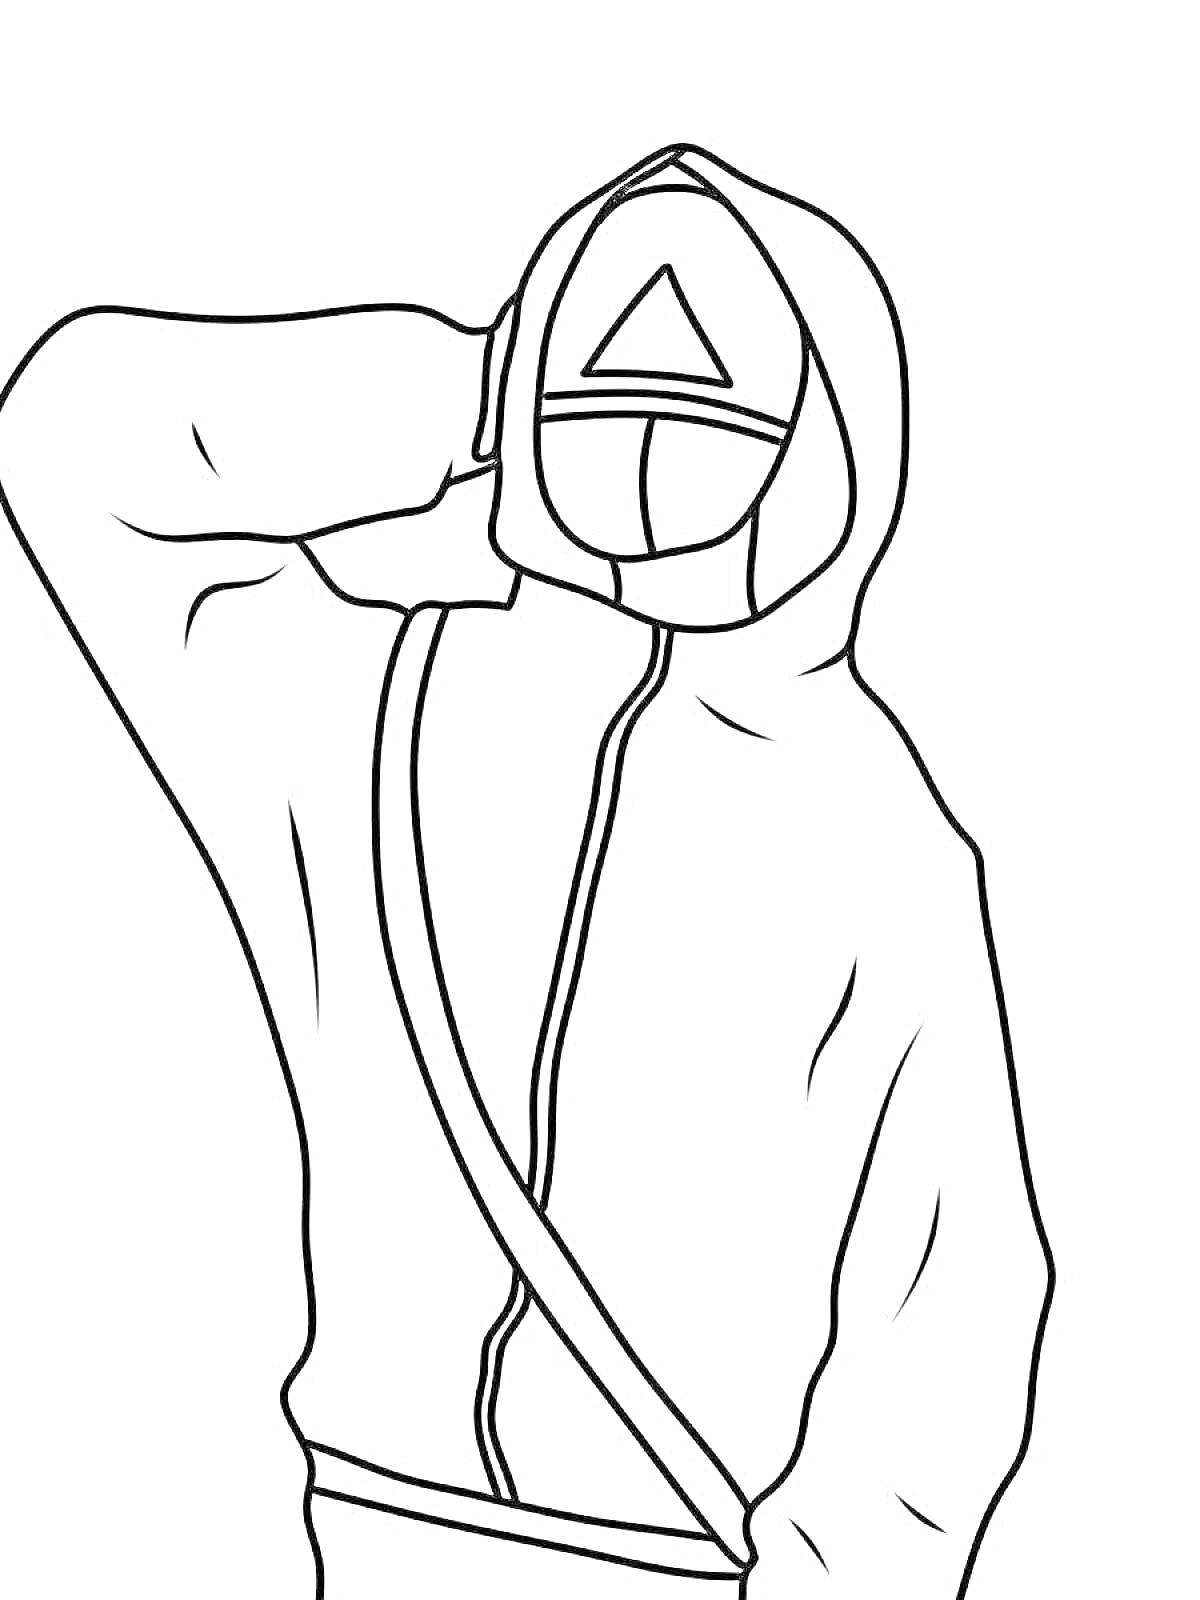 Раскраска Раскраска охранника из Игры в кальмара с треугольником на маске, с повязкой и поднятой рукой